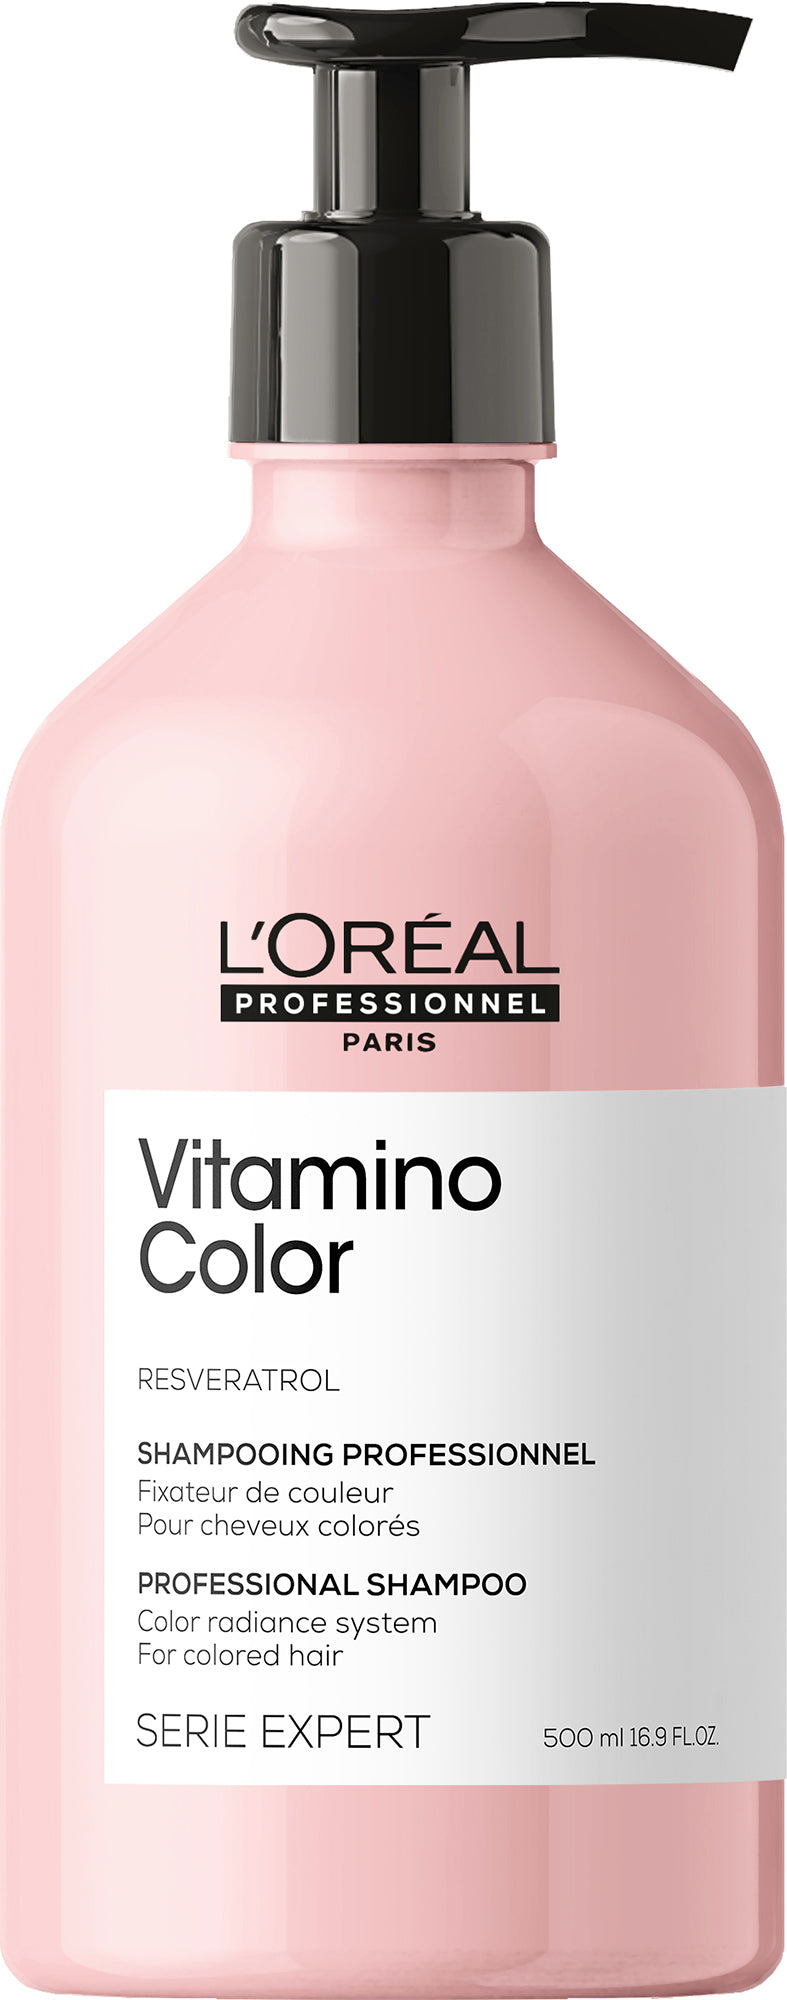 Sham LP Vitamino Color 500ml